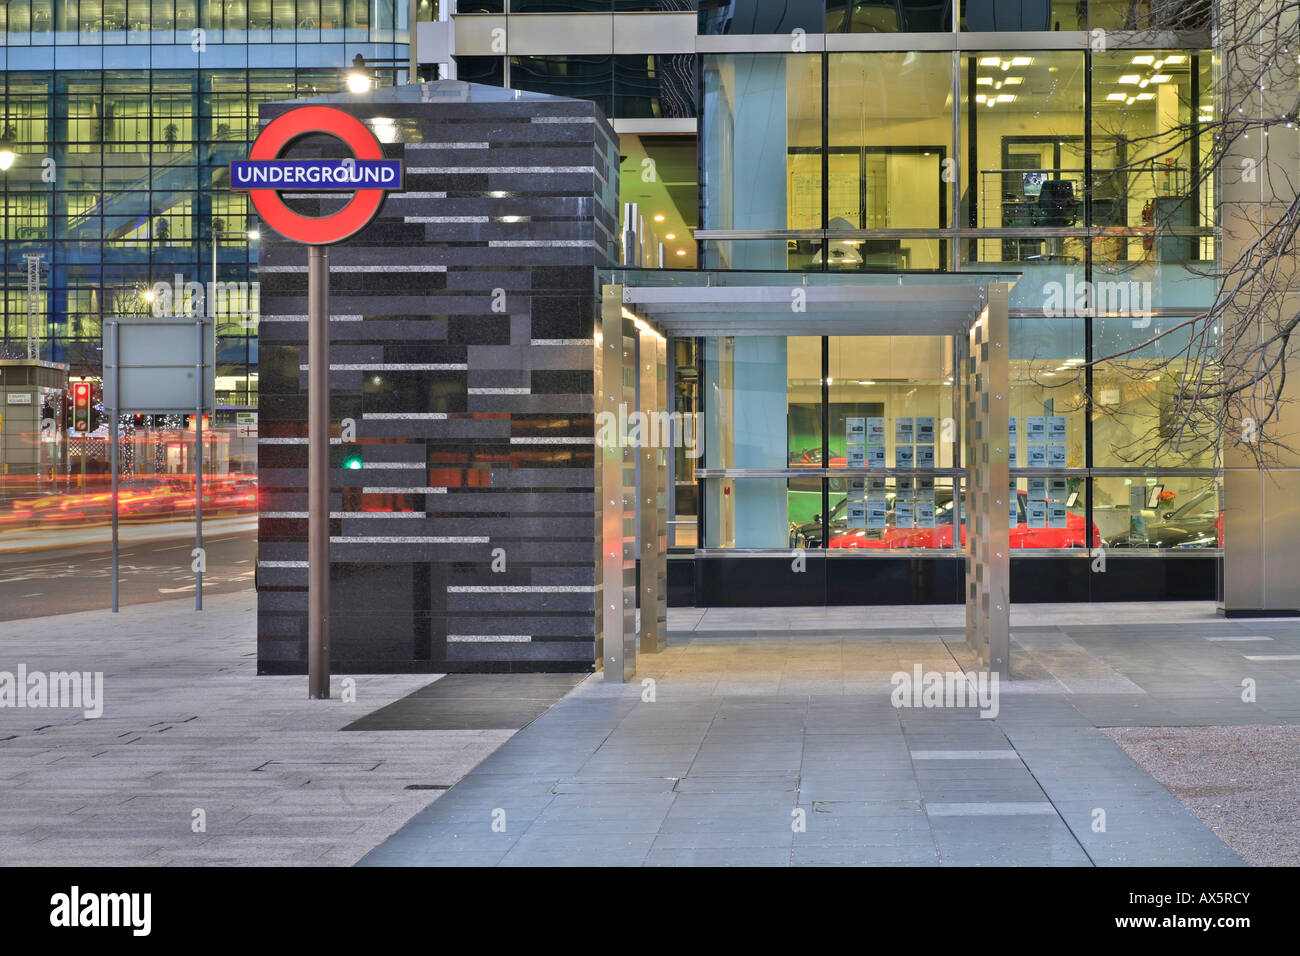 Cabane moderne à la station de métro Canary Wharf, les Docklands, London, Angleterre, Royaume-Uni, Europe Banque D'Images